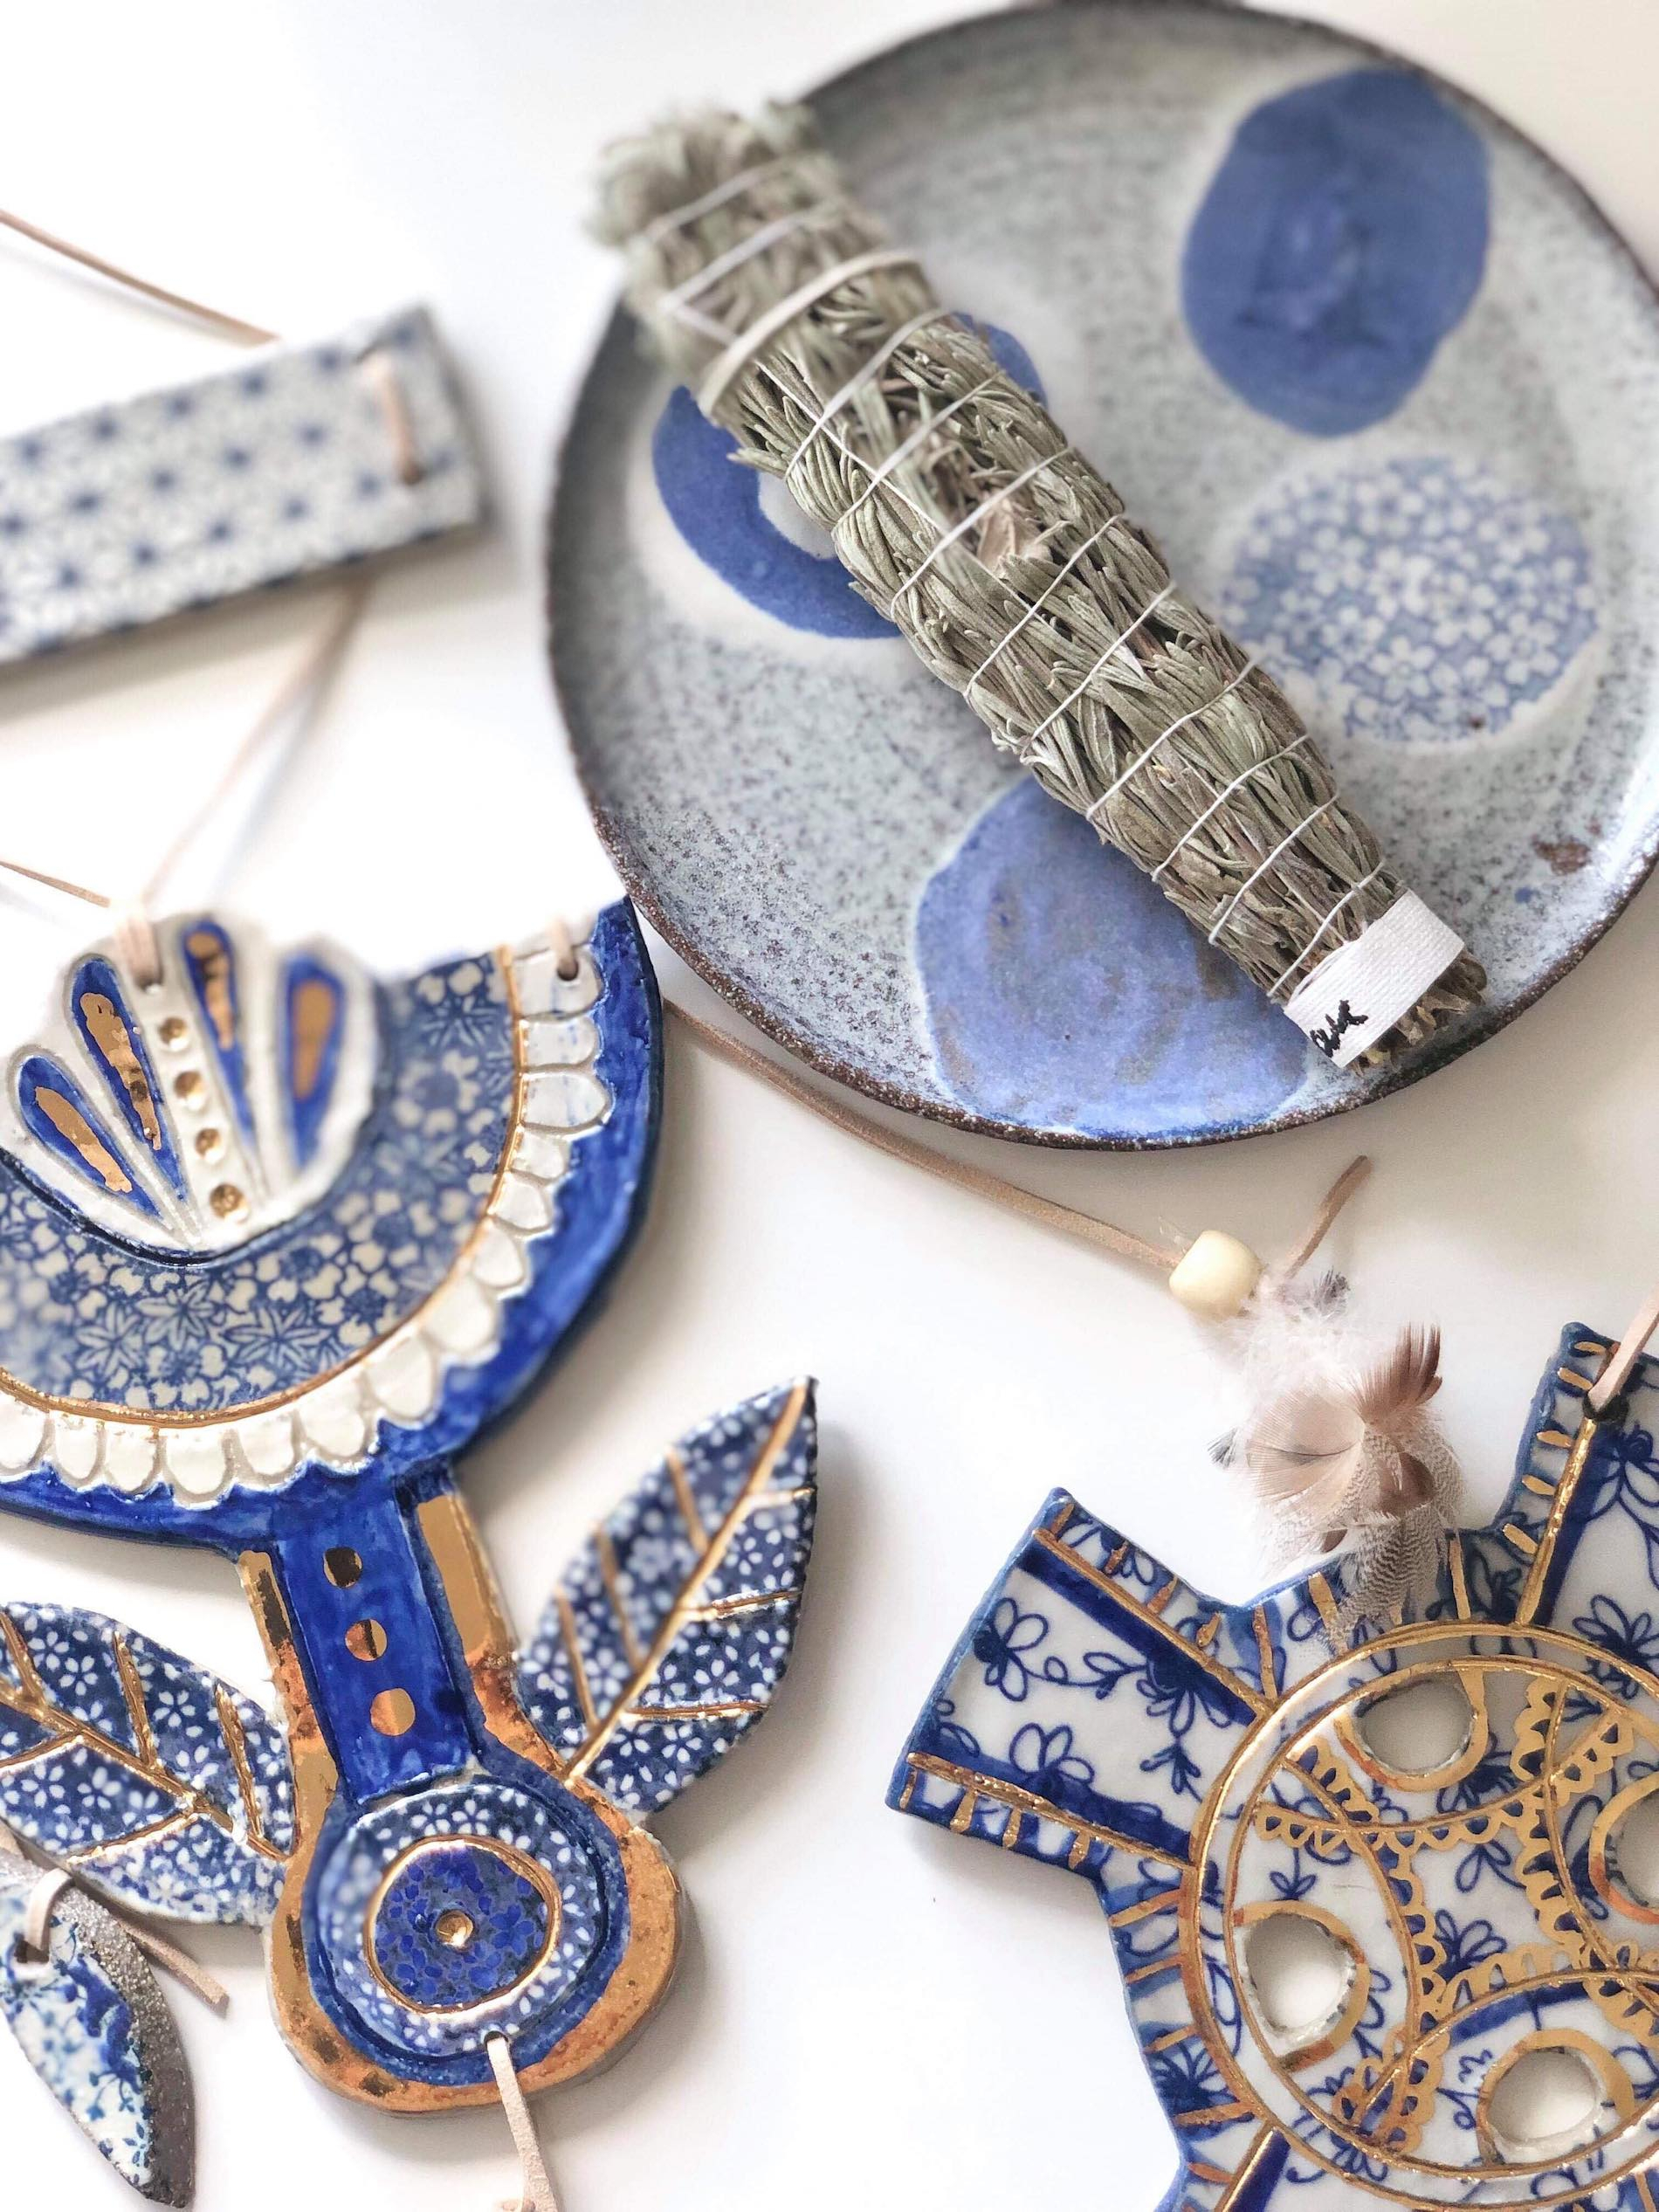 Close-up of Carys Martin Ceramics pieces